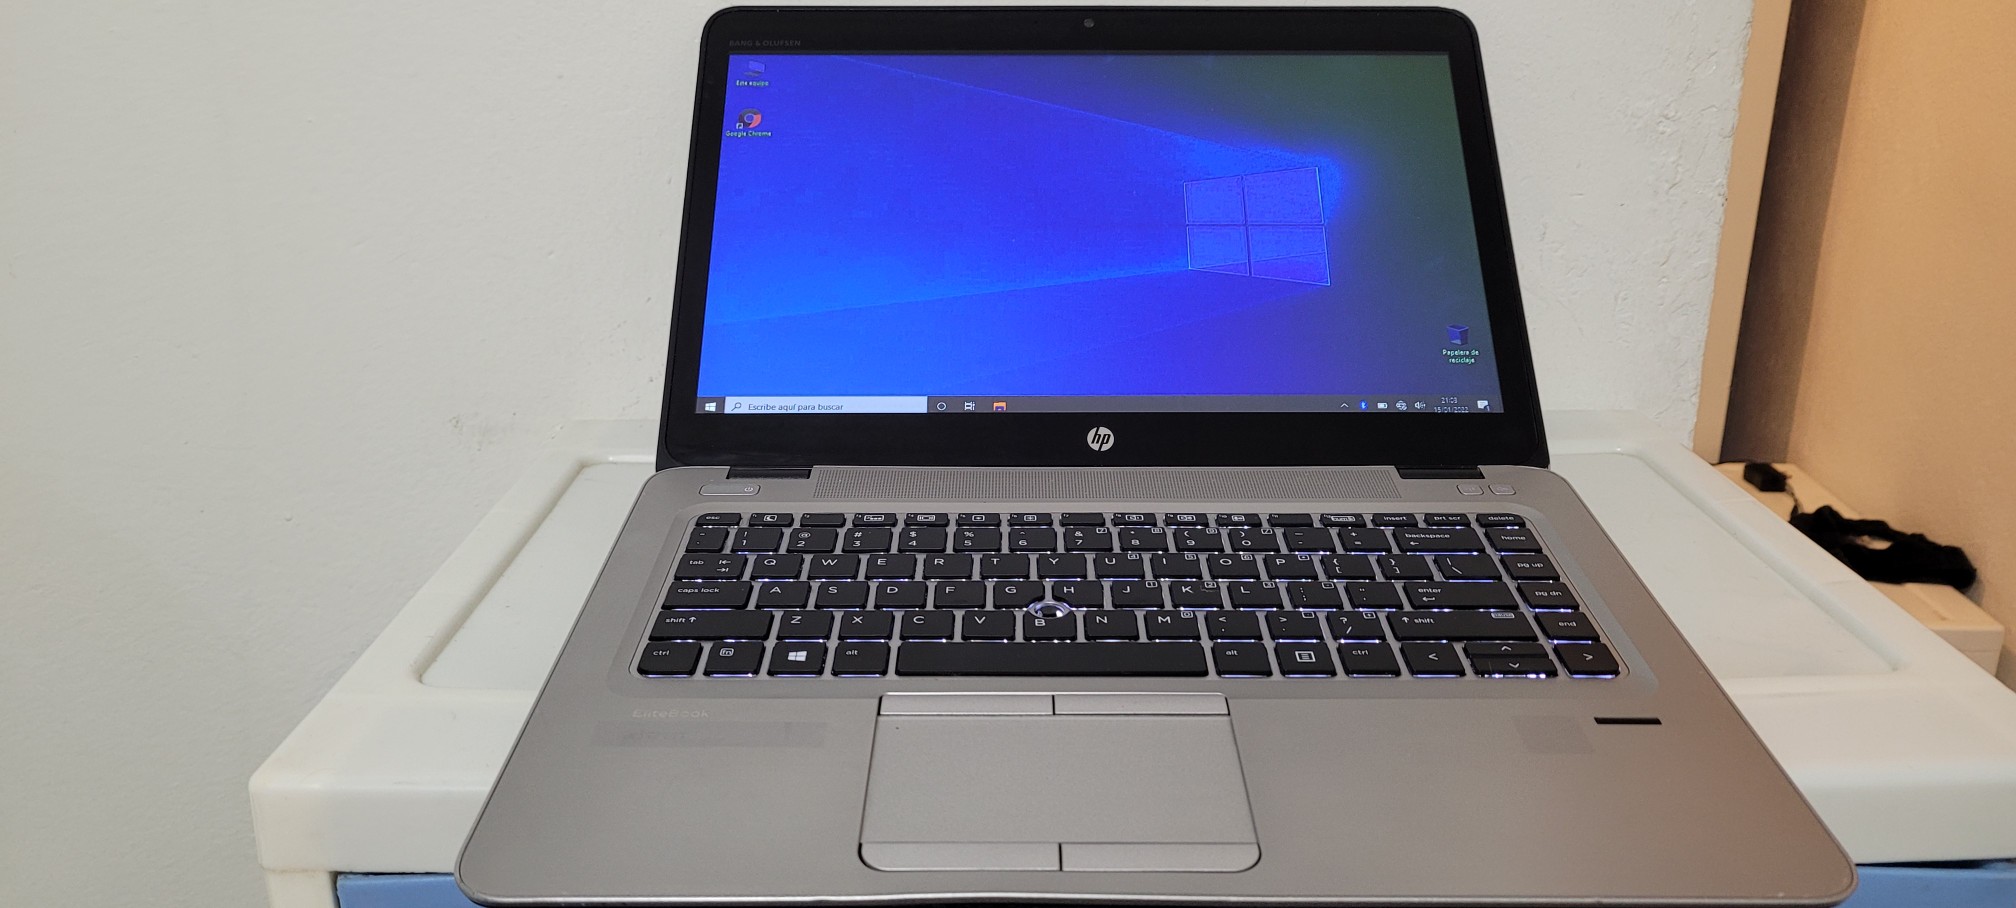 computadoras y laptops - Laptop hp Slim G3 14 Pulg Core i5 6ta Gen Ram 8gb ddr4 Disco 500gb Full 0